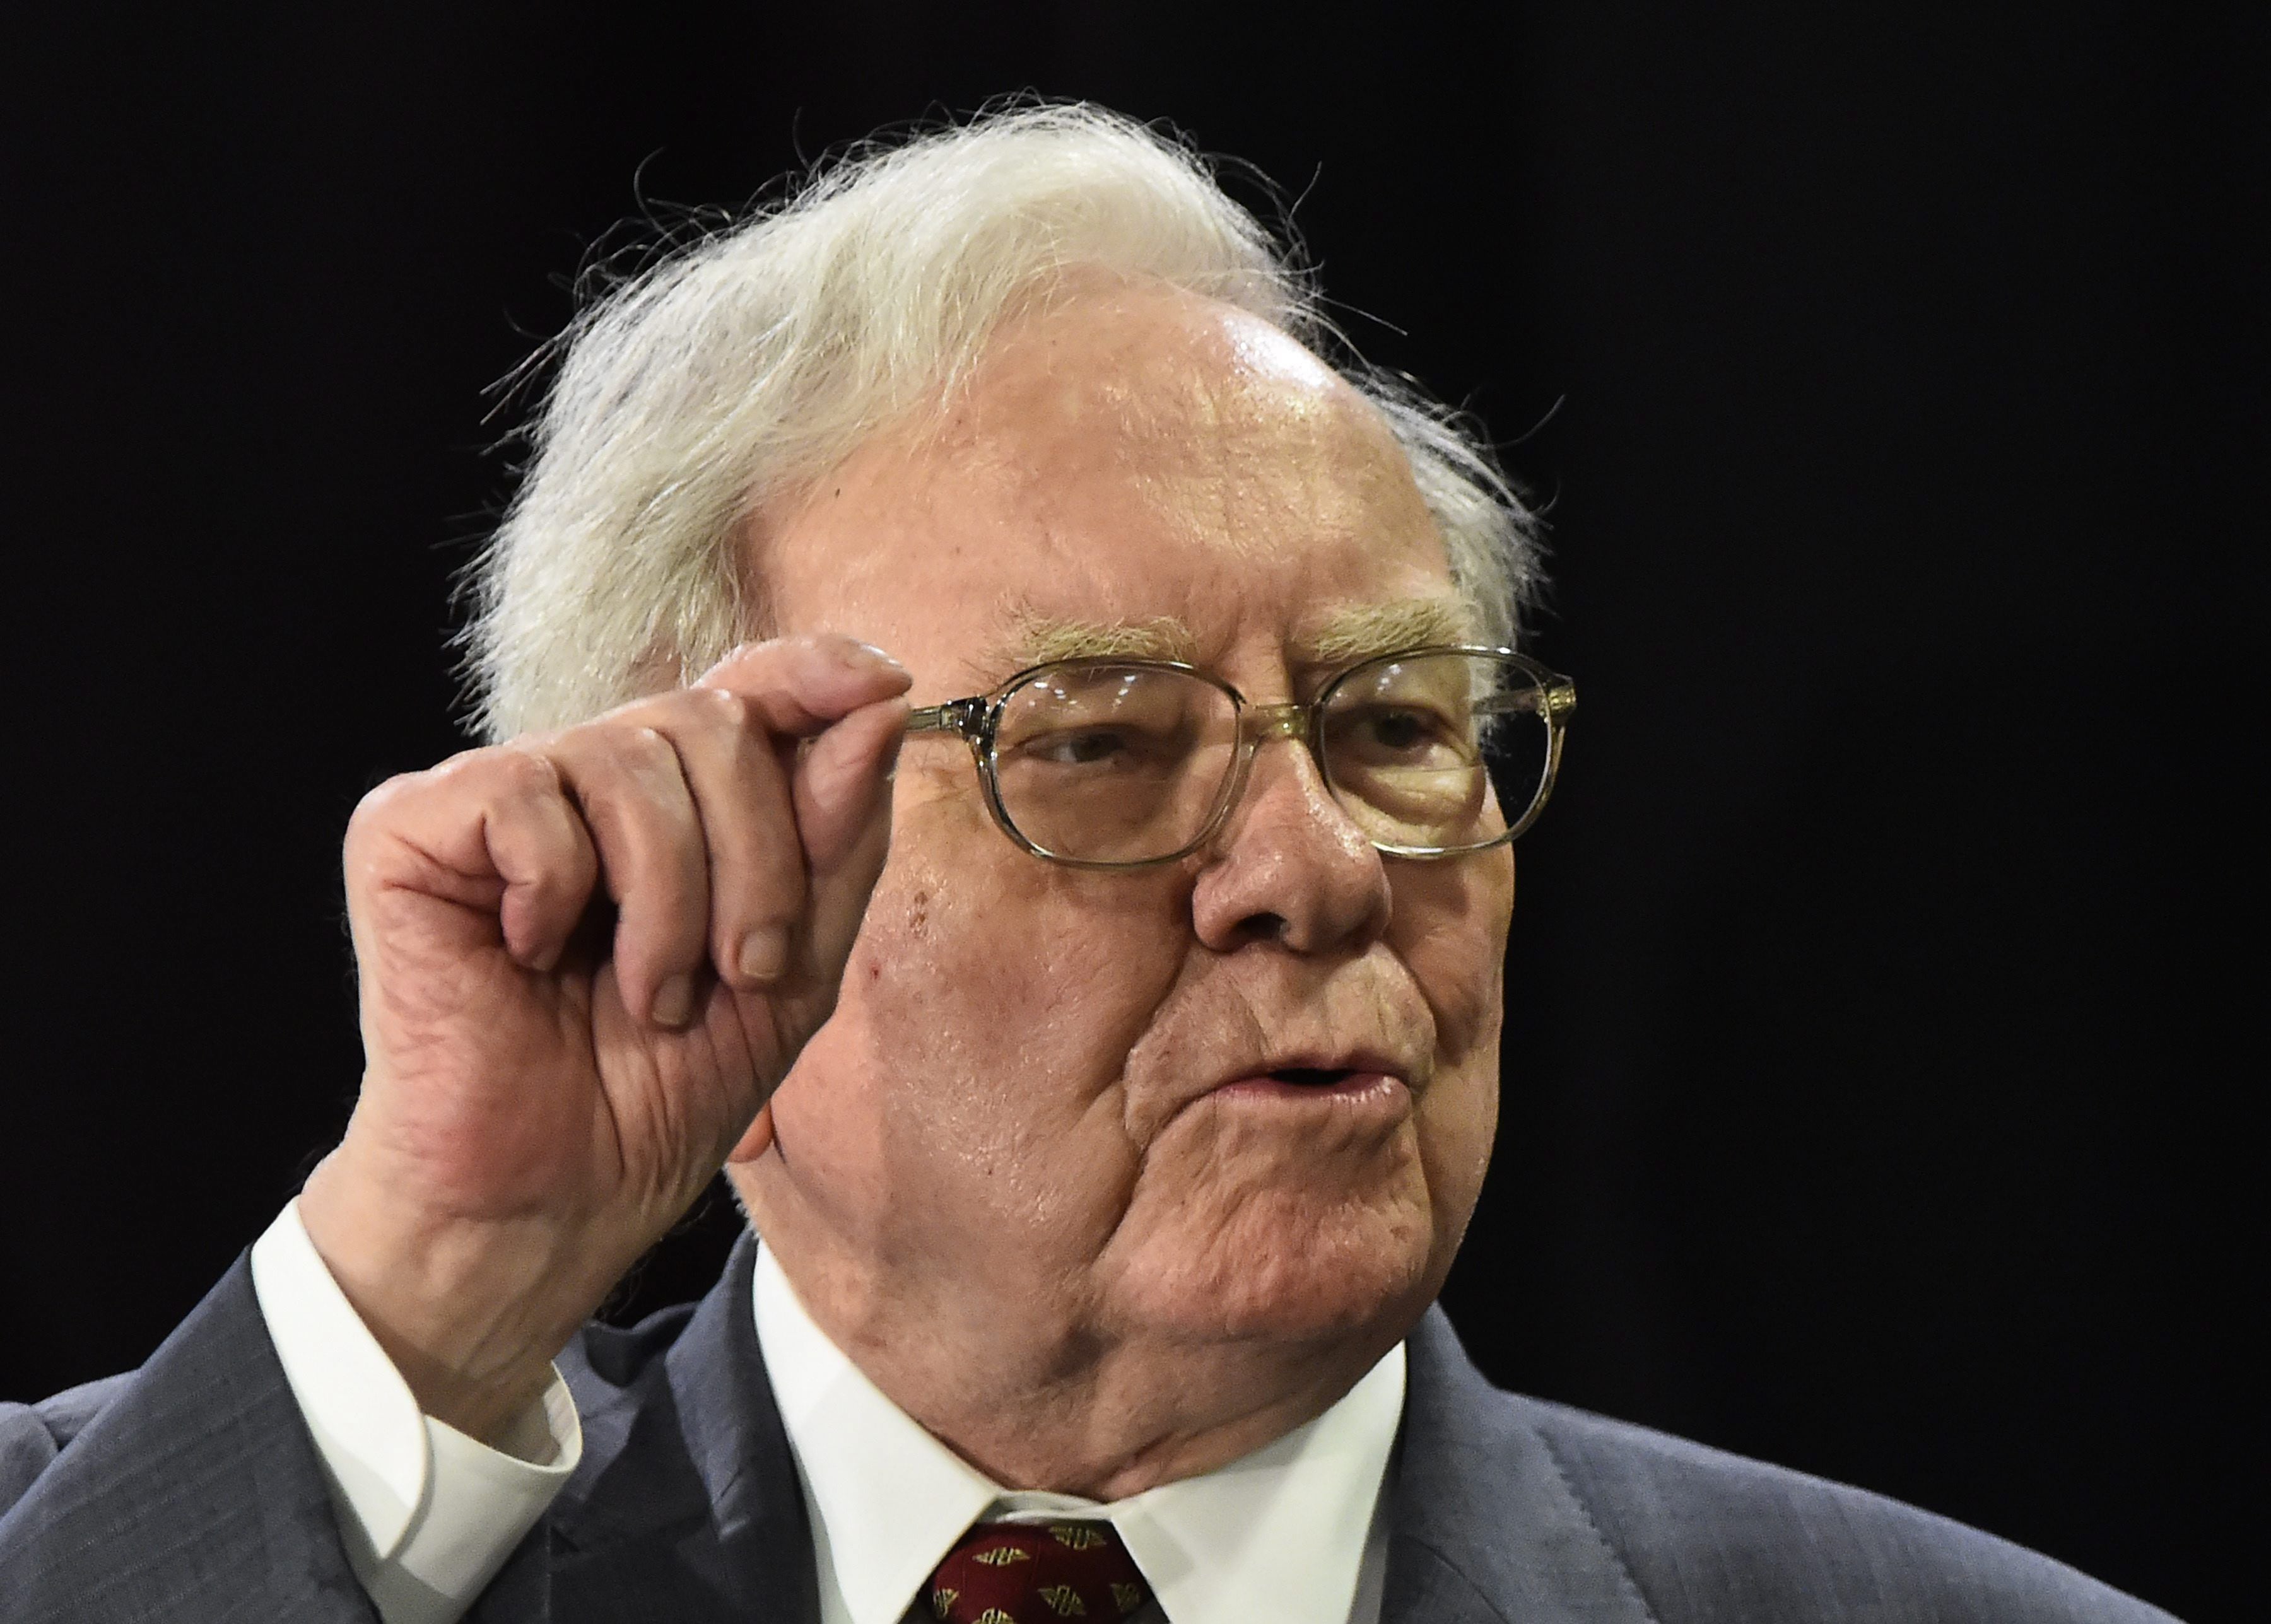 Warren Buffett compara la inteligencia artificial con las armas nucleares: “Me asusta muchísimo”